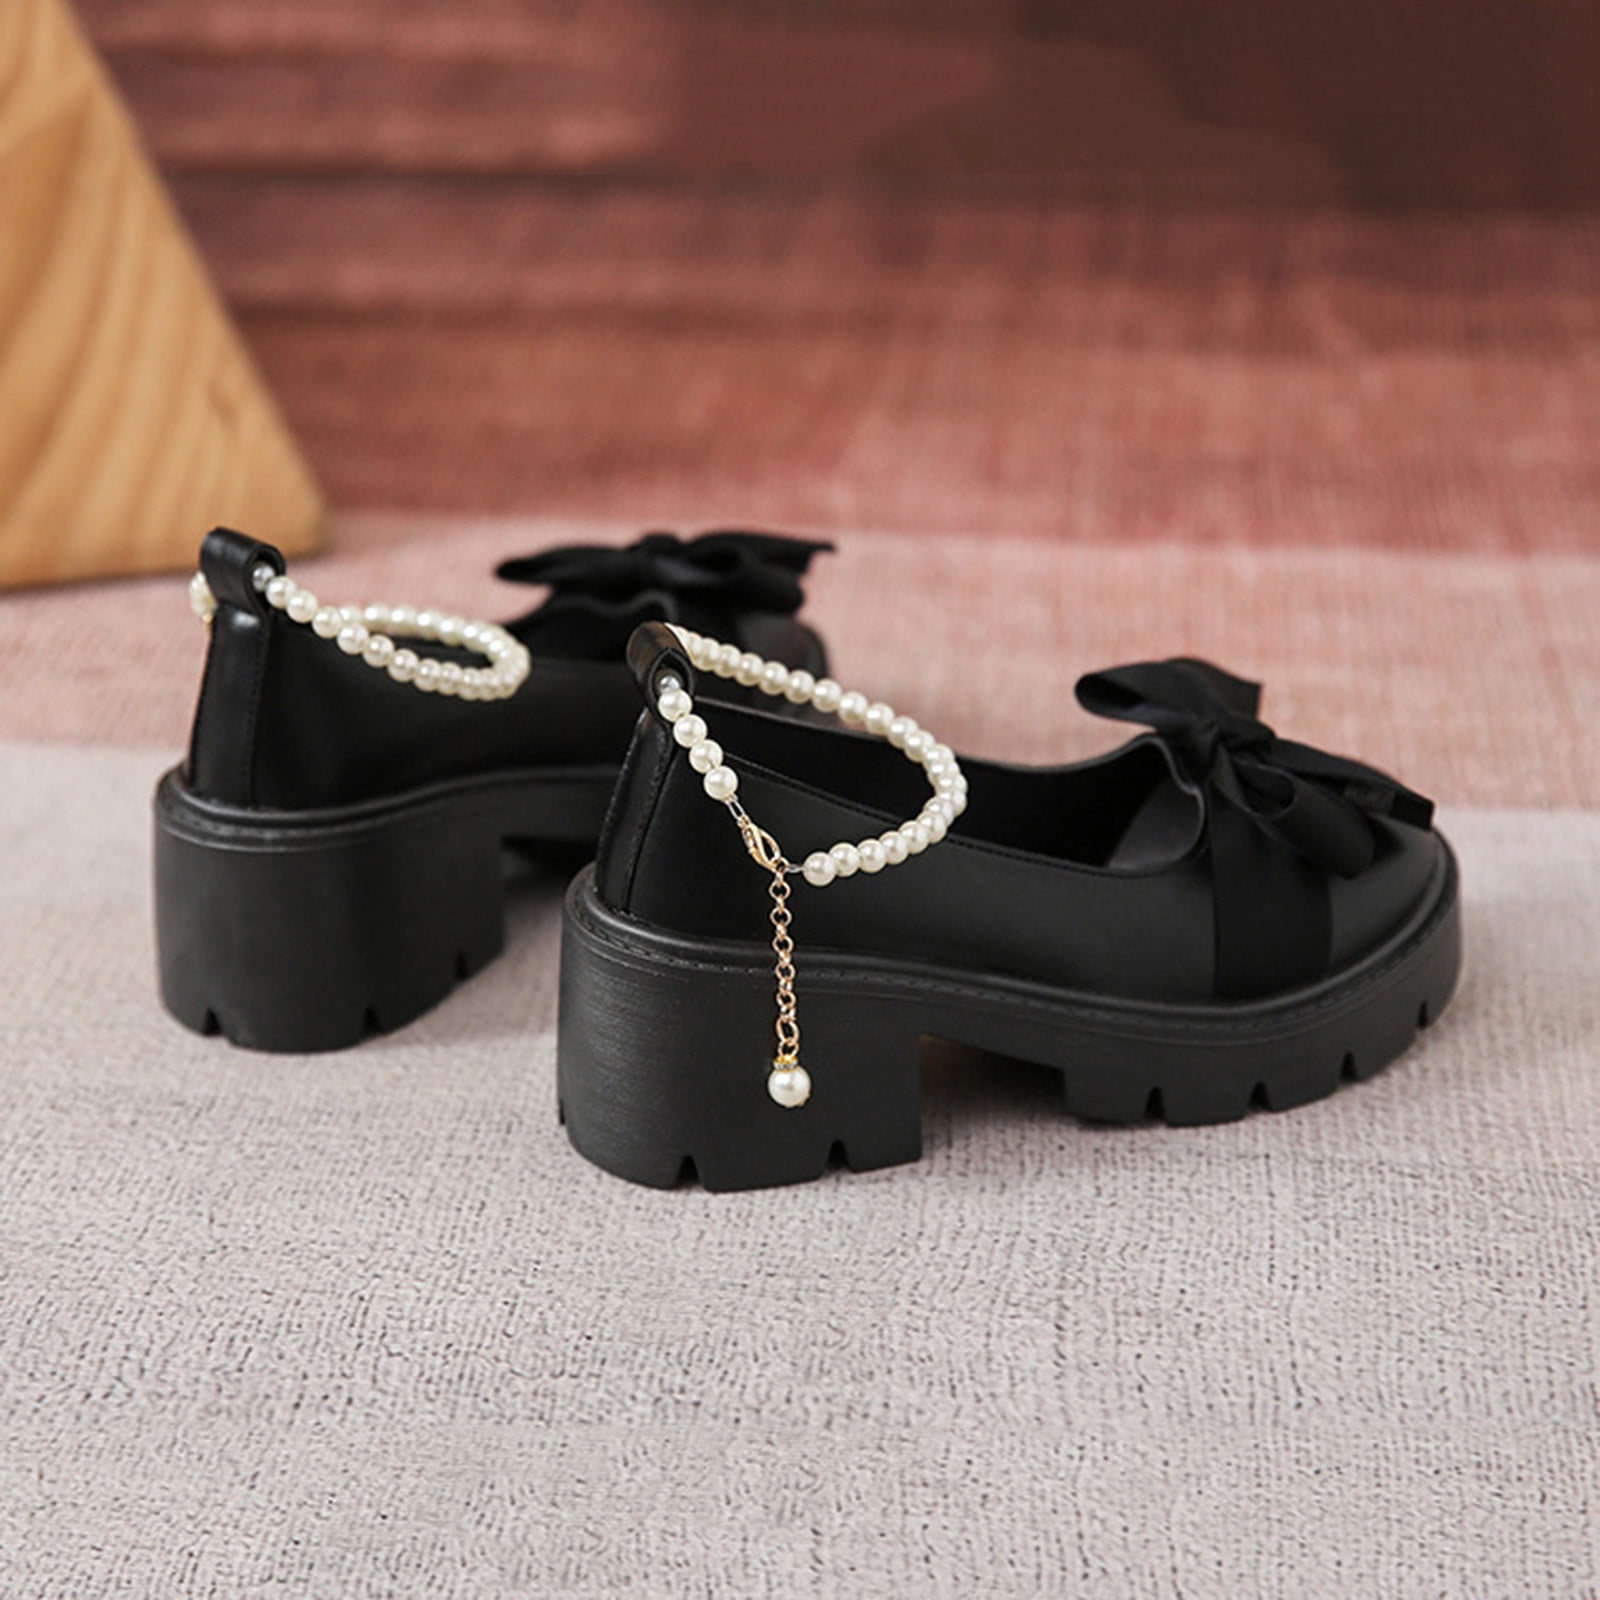 Plain 1inch Black Velvet Ladies High Heel Sandal at Rs 220/pair in New Delhi